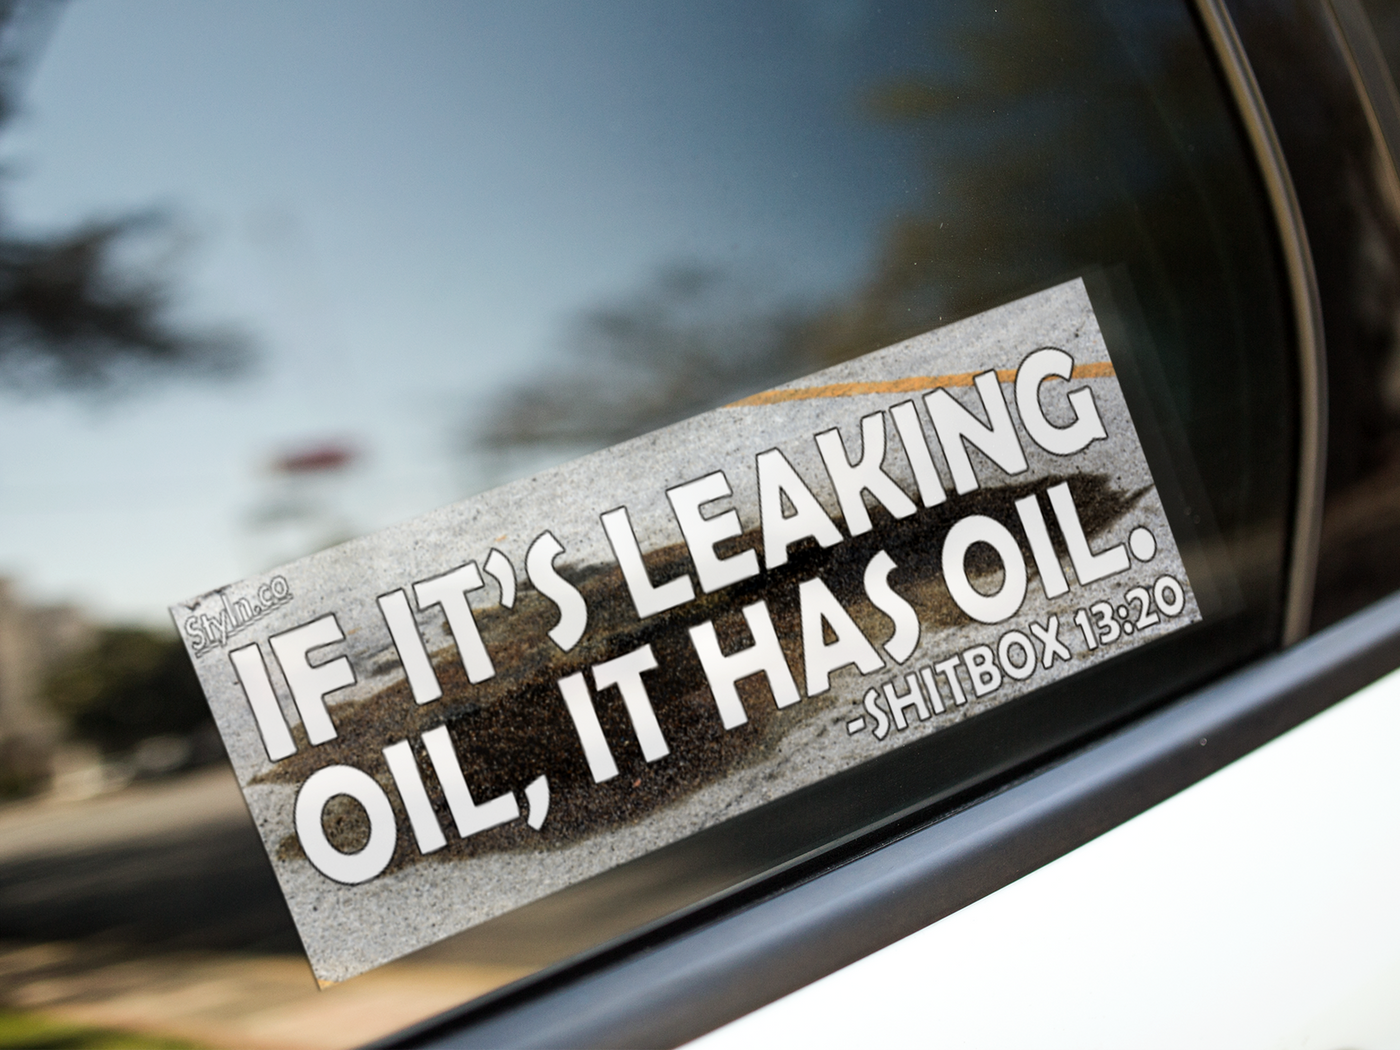 SLAP IF ITS LEAKING OIL IT HAS OIL